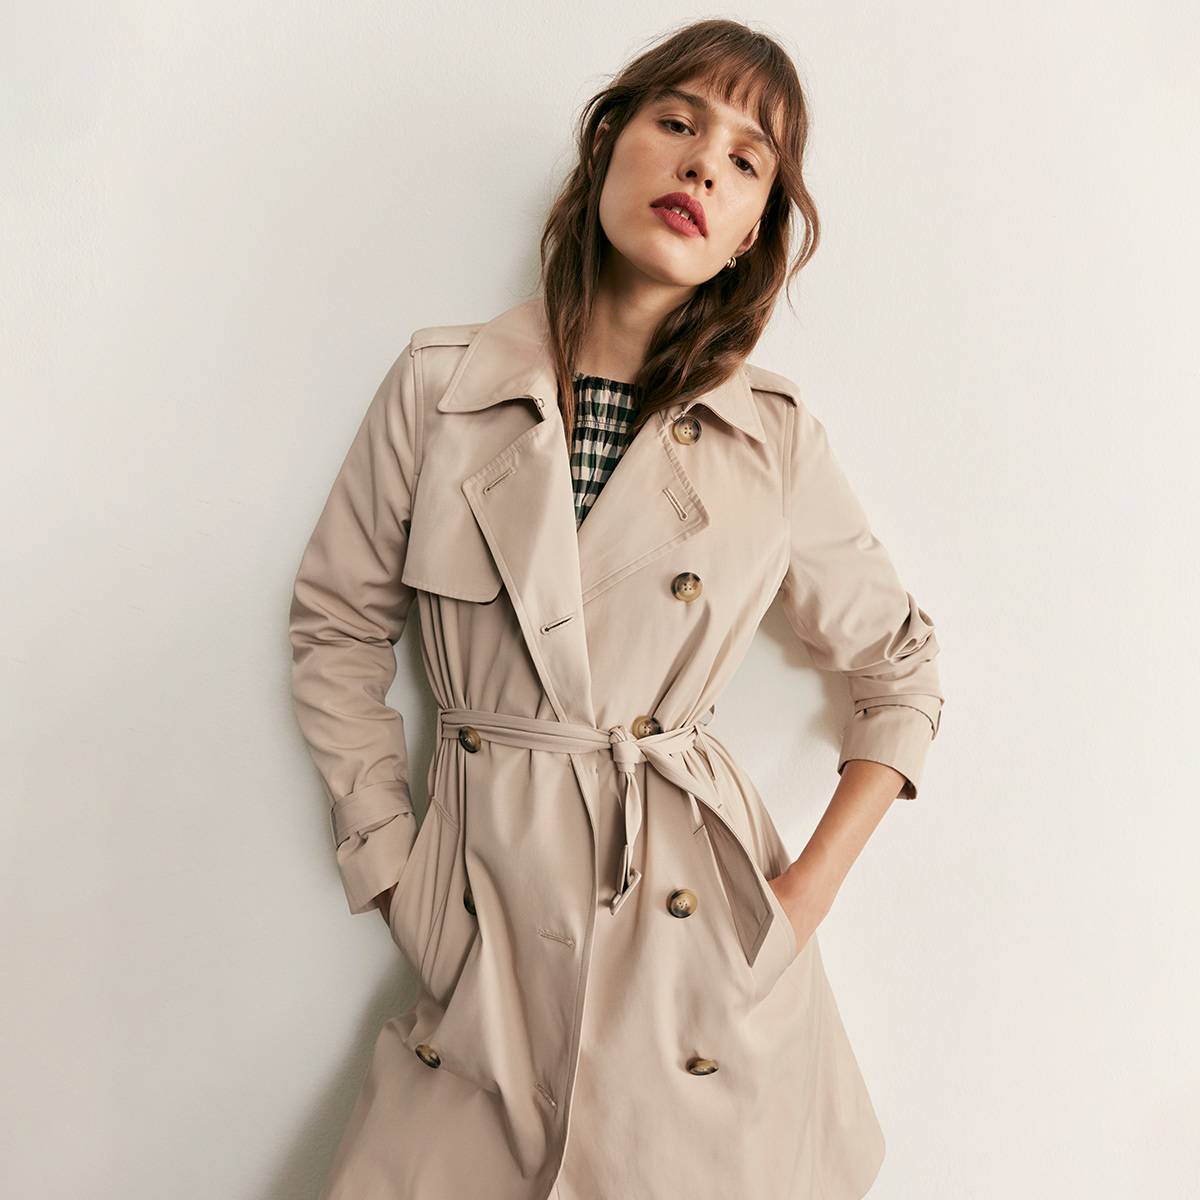  Woman wearing beige trench coat